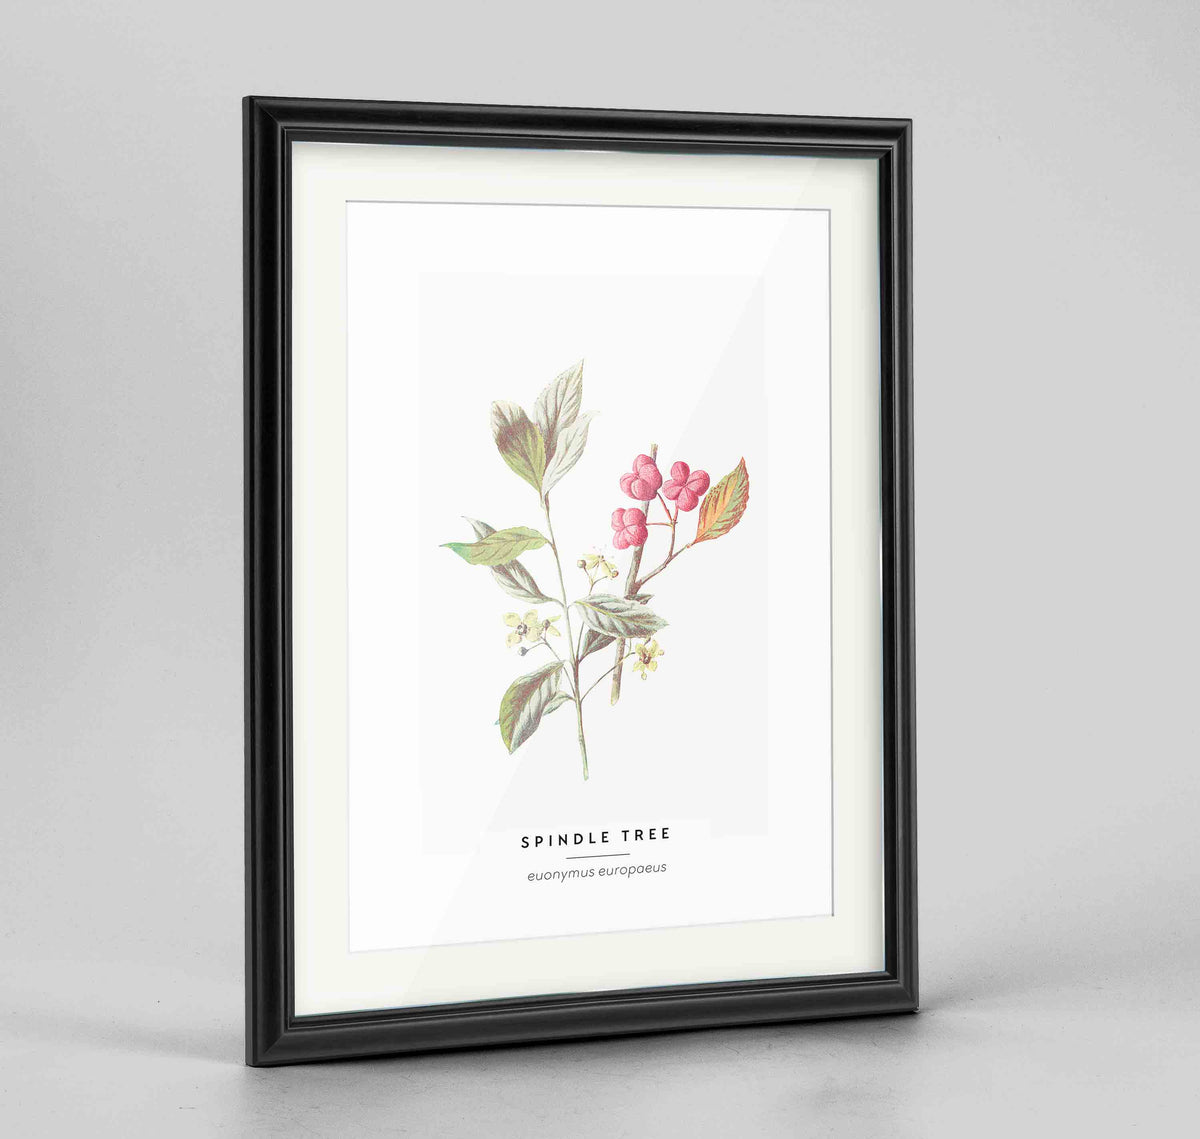 Spindle Tree Botanical Art Print - Framed